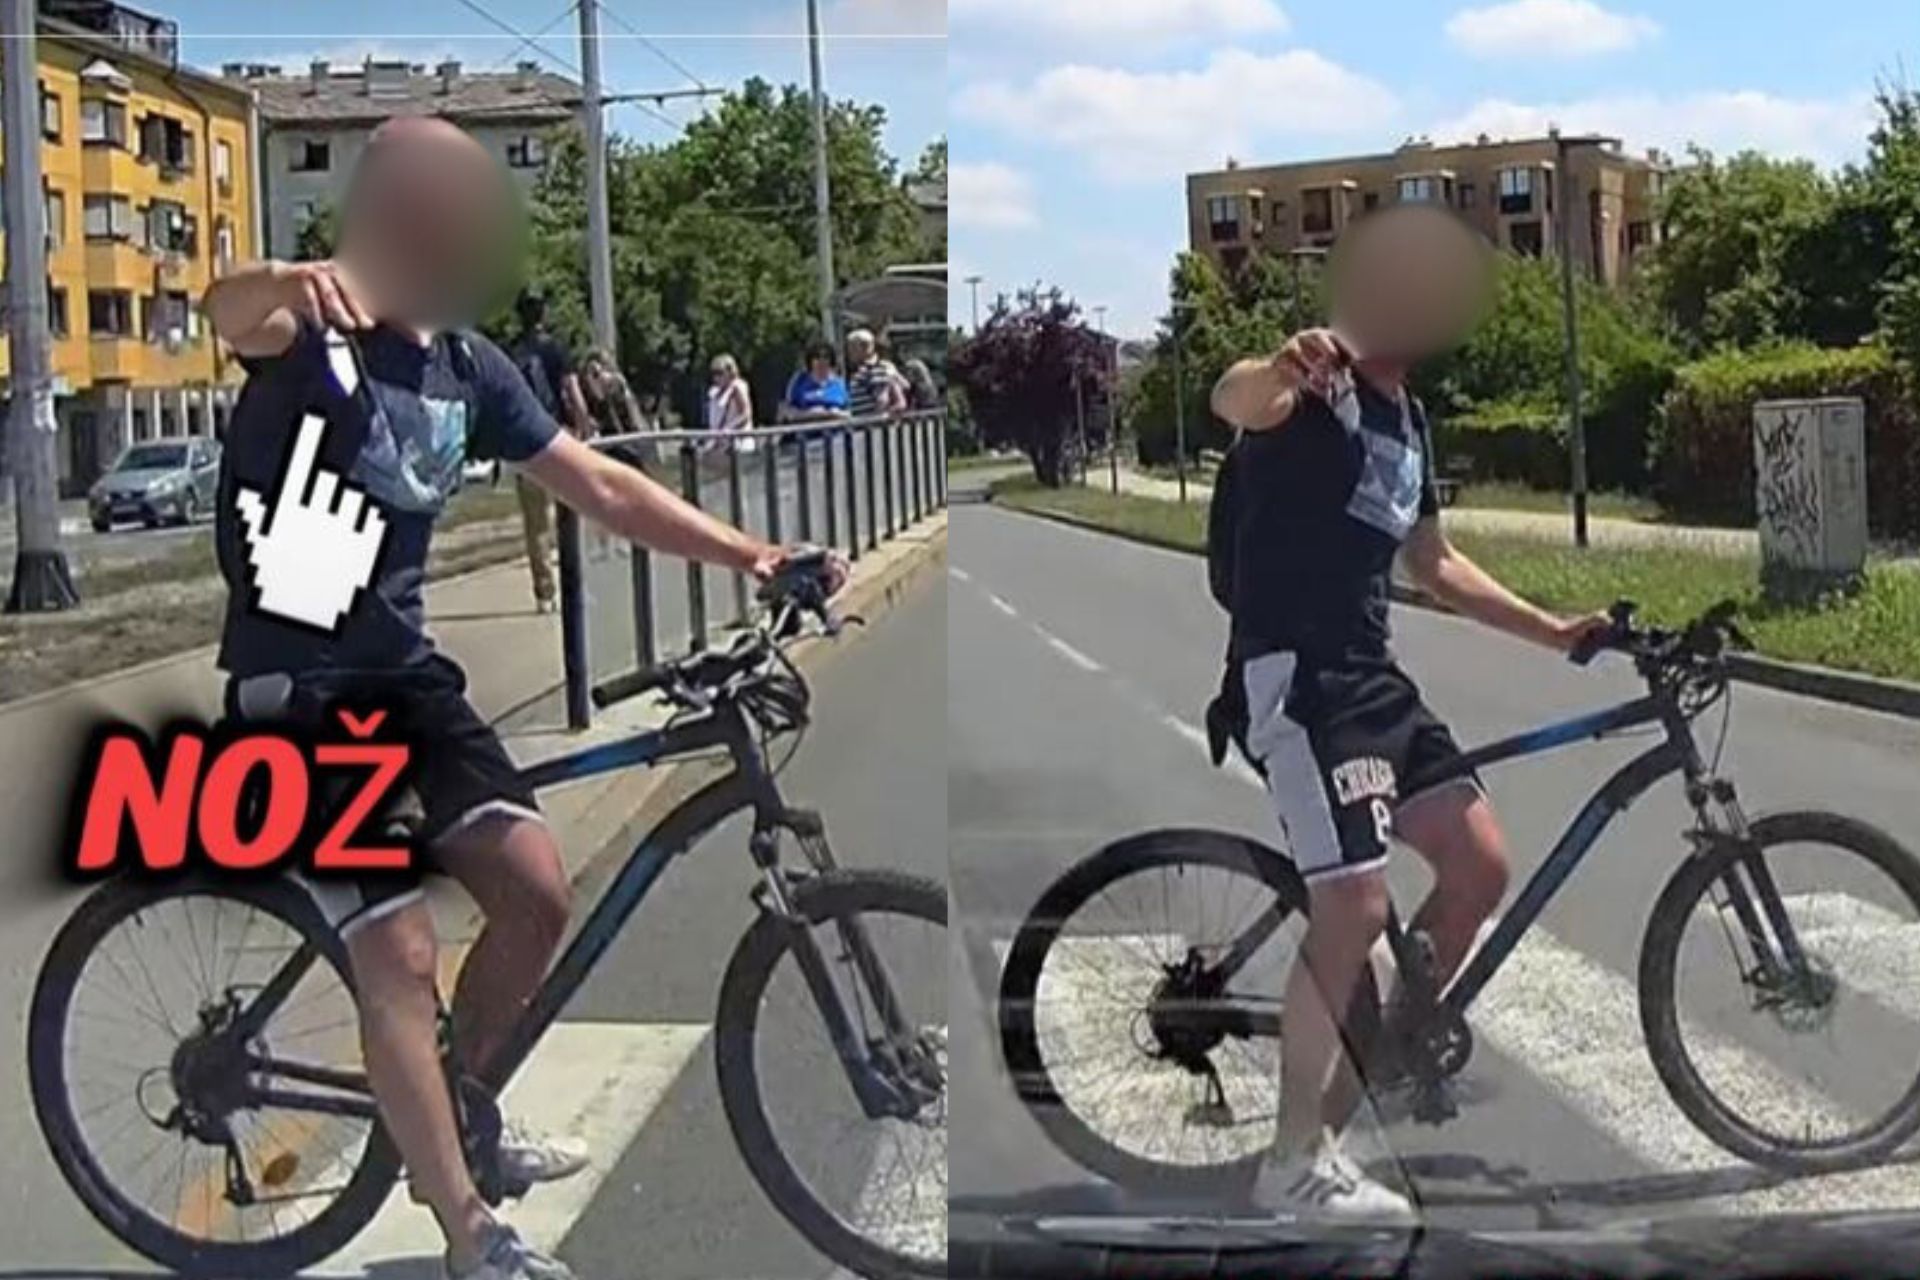 čovjek na biciklu ispred autoškole s nožem u ruci, lice mu je zablurano